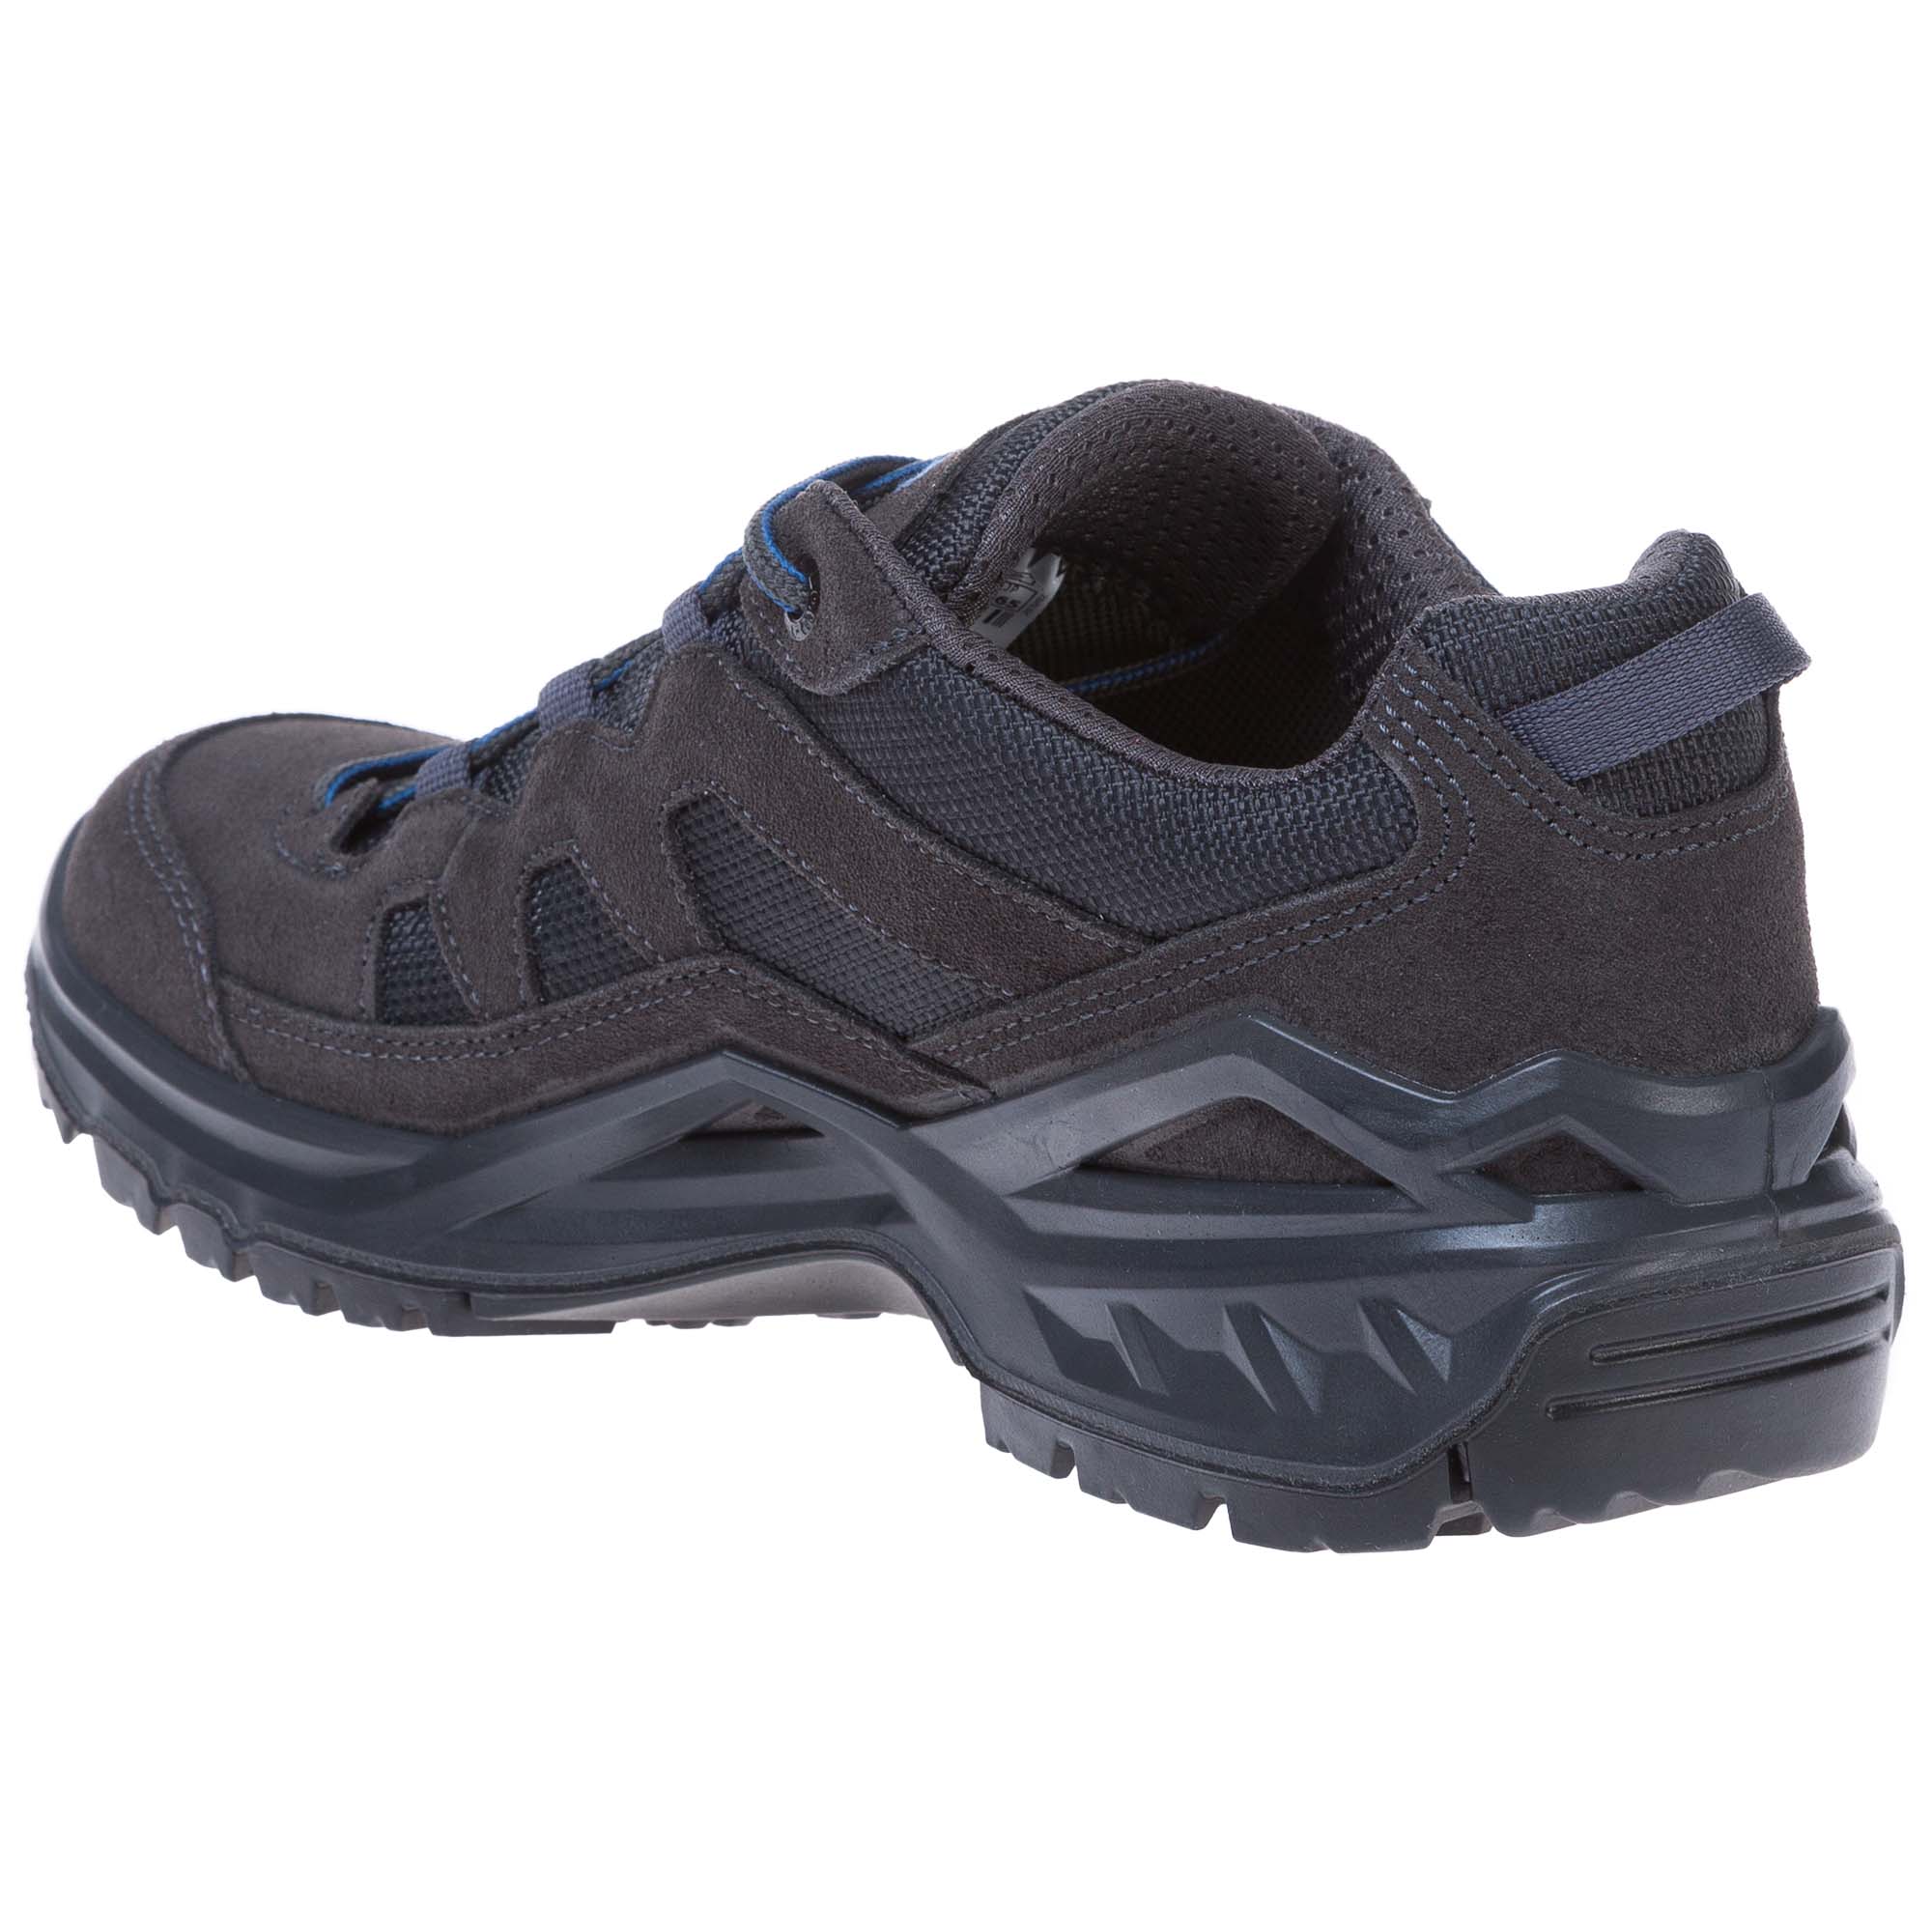 Lowa Sirkos Evo GTX Lo Men's Walking Shoes